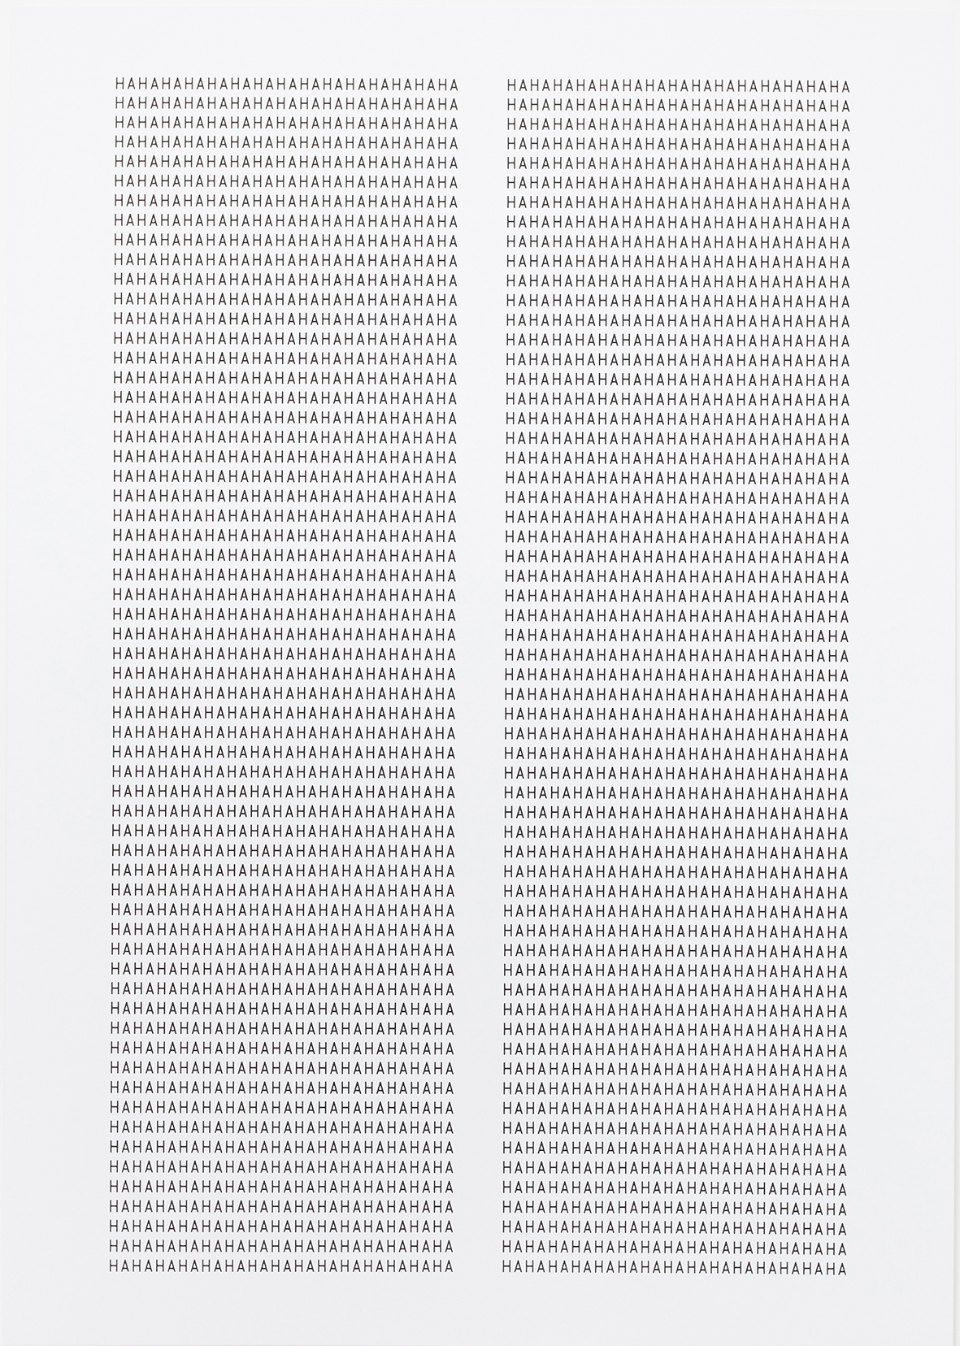 Variationen (Blatt 4/4), 2015, Siebdruck auf Papier, 101 x 72 cm